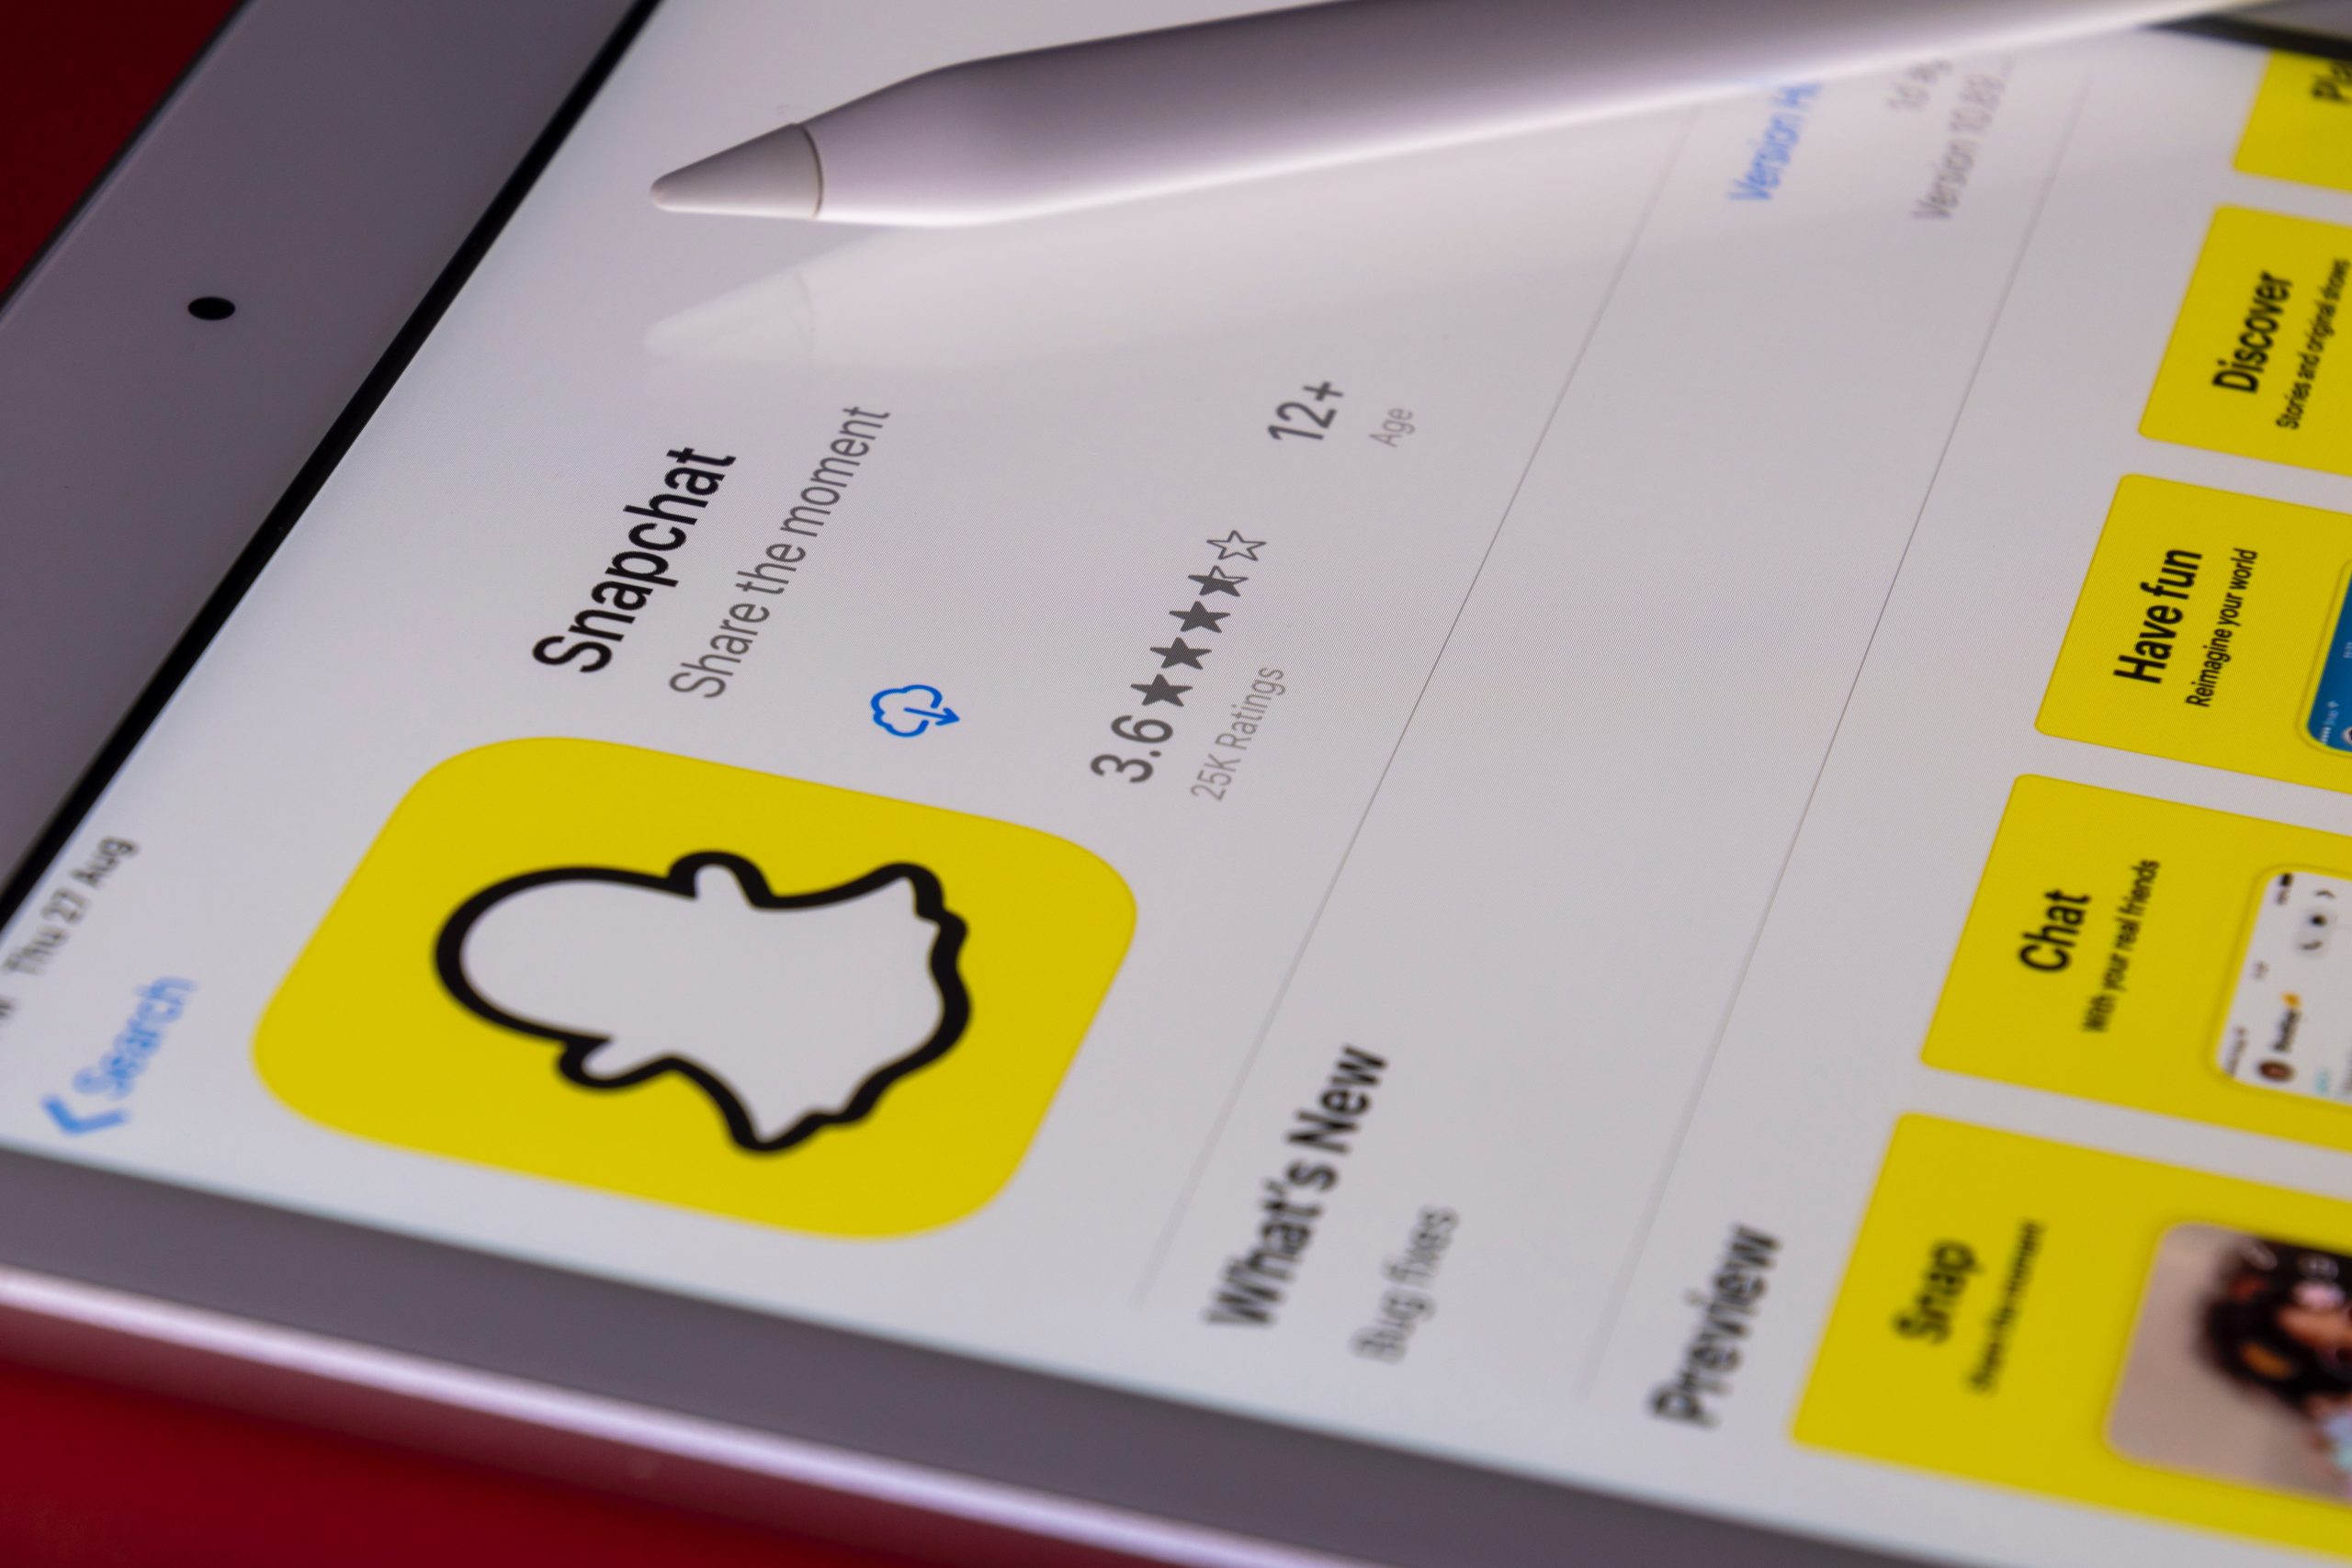 انقطاع تطبيق Snapchat أمس عن آلاف المستخدمين لأسباب غامضة